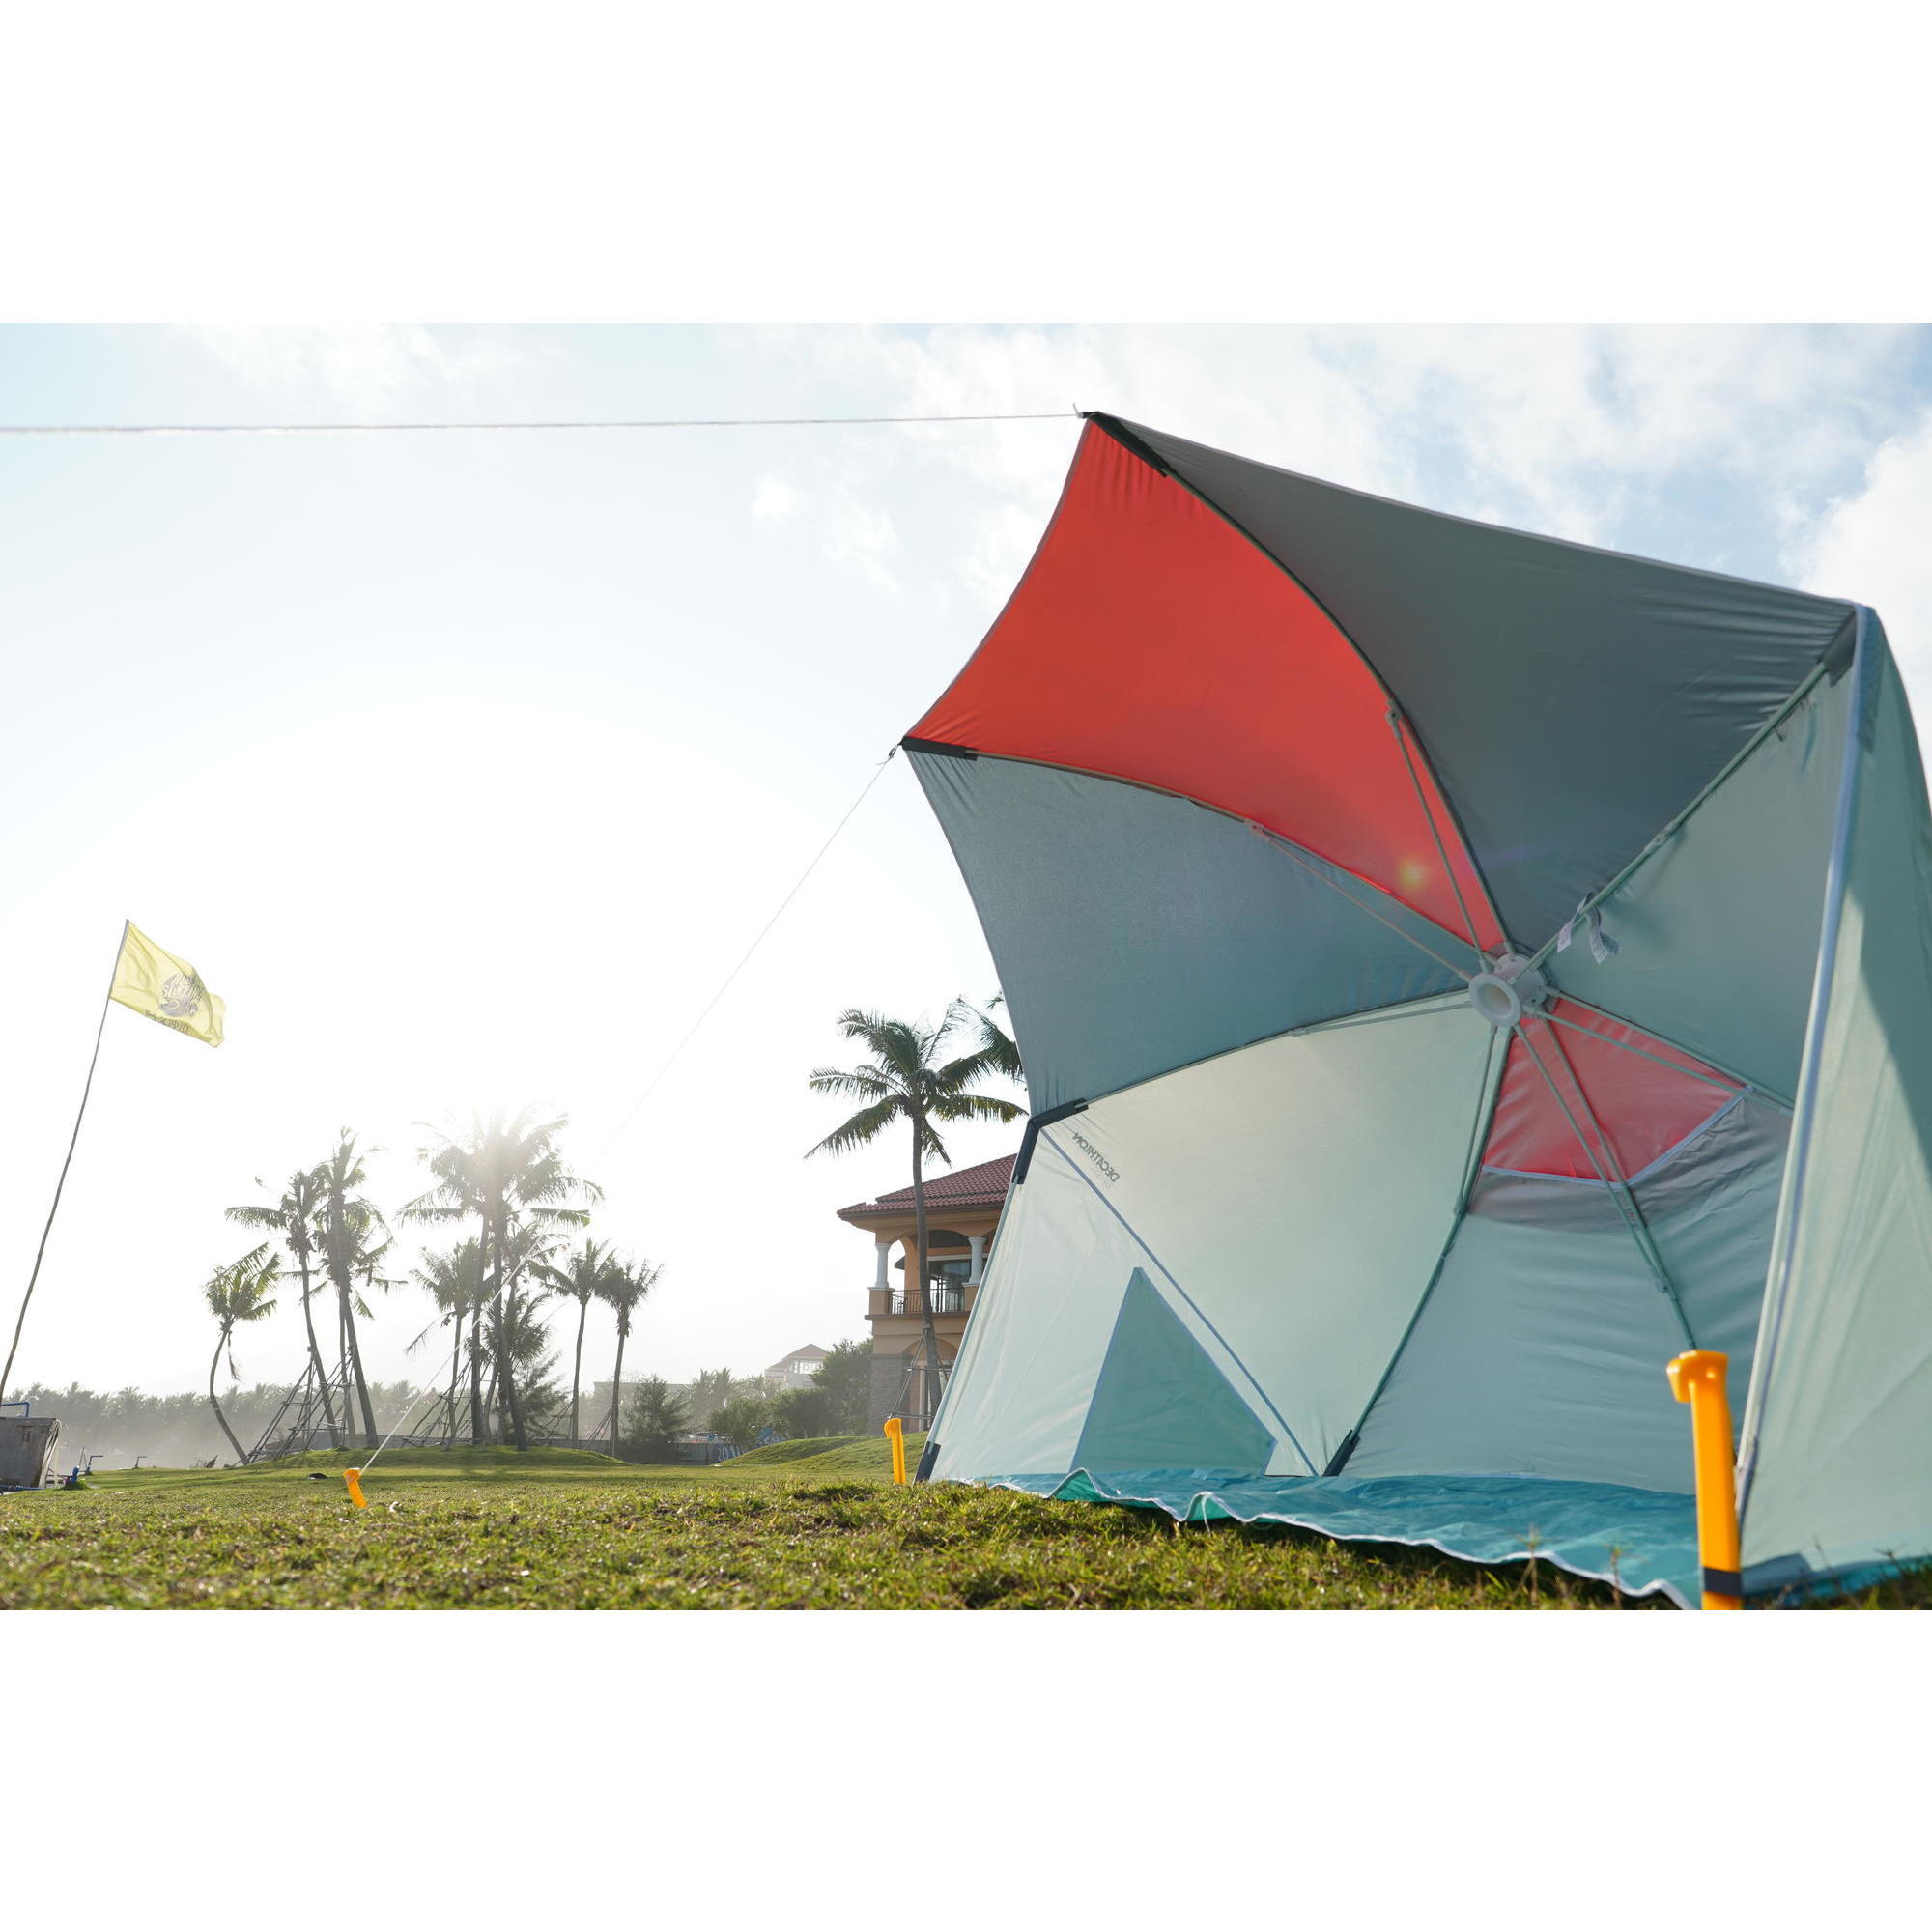 0円 格安SALEスタート ビーチテントWolfWise 3 Person Portable Beach Tent UPF 50 Sun Shade Canopy Umbrel